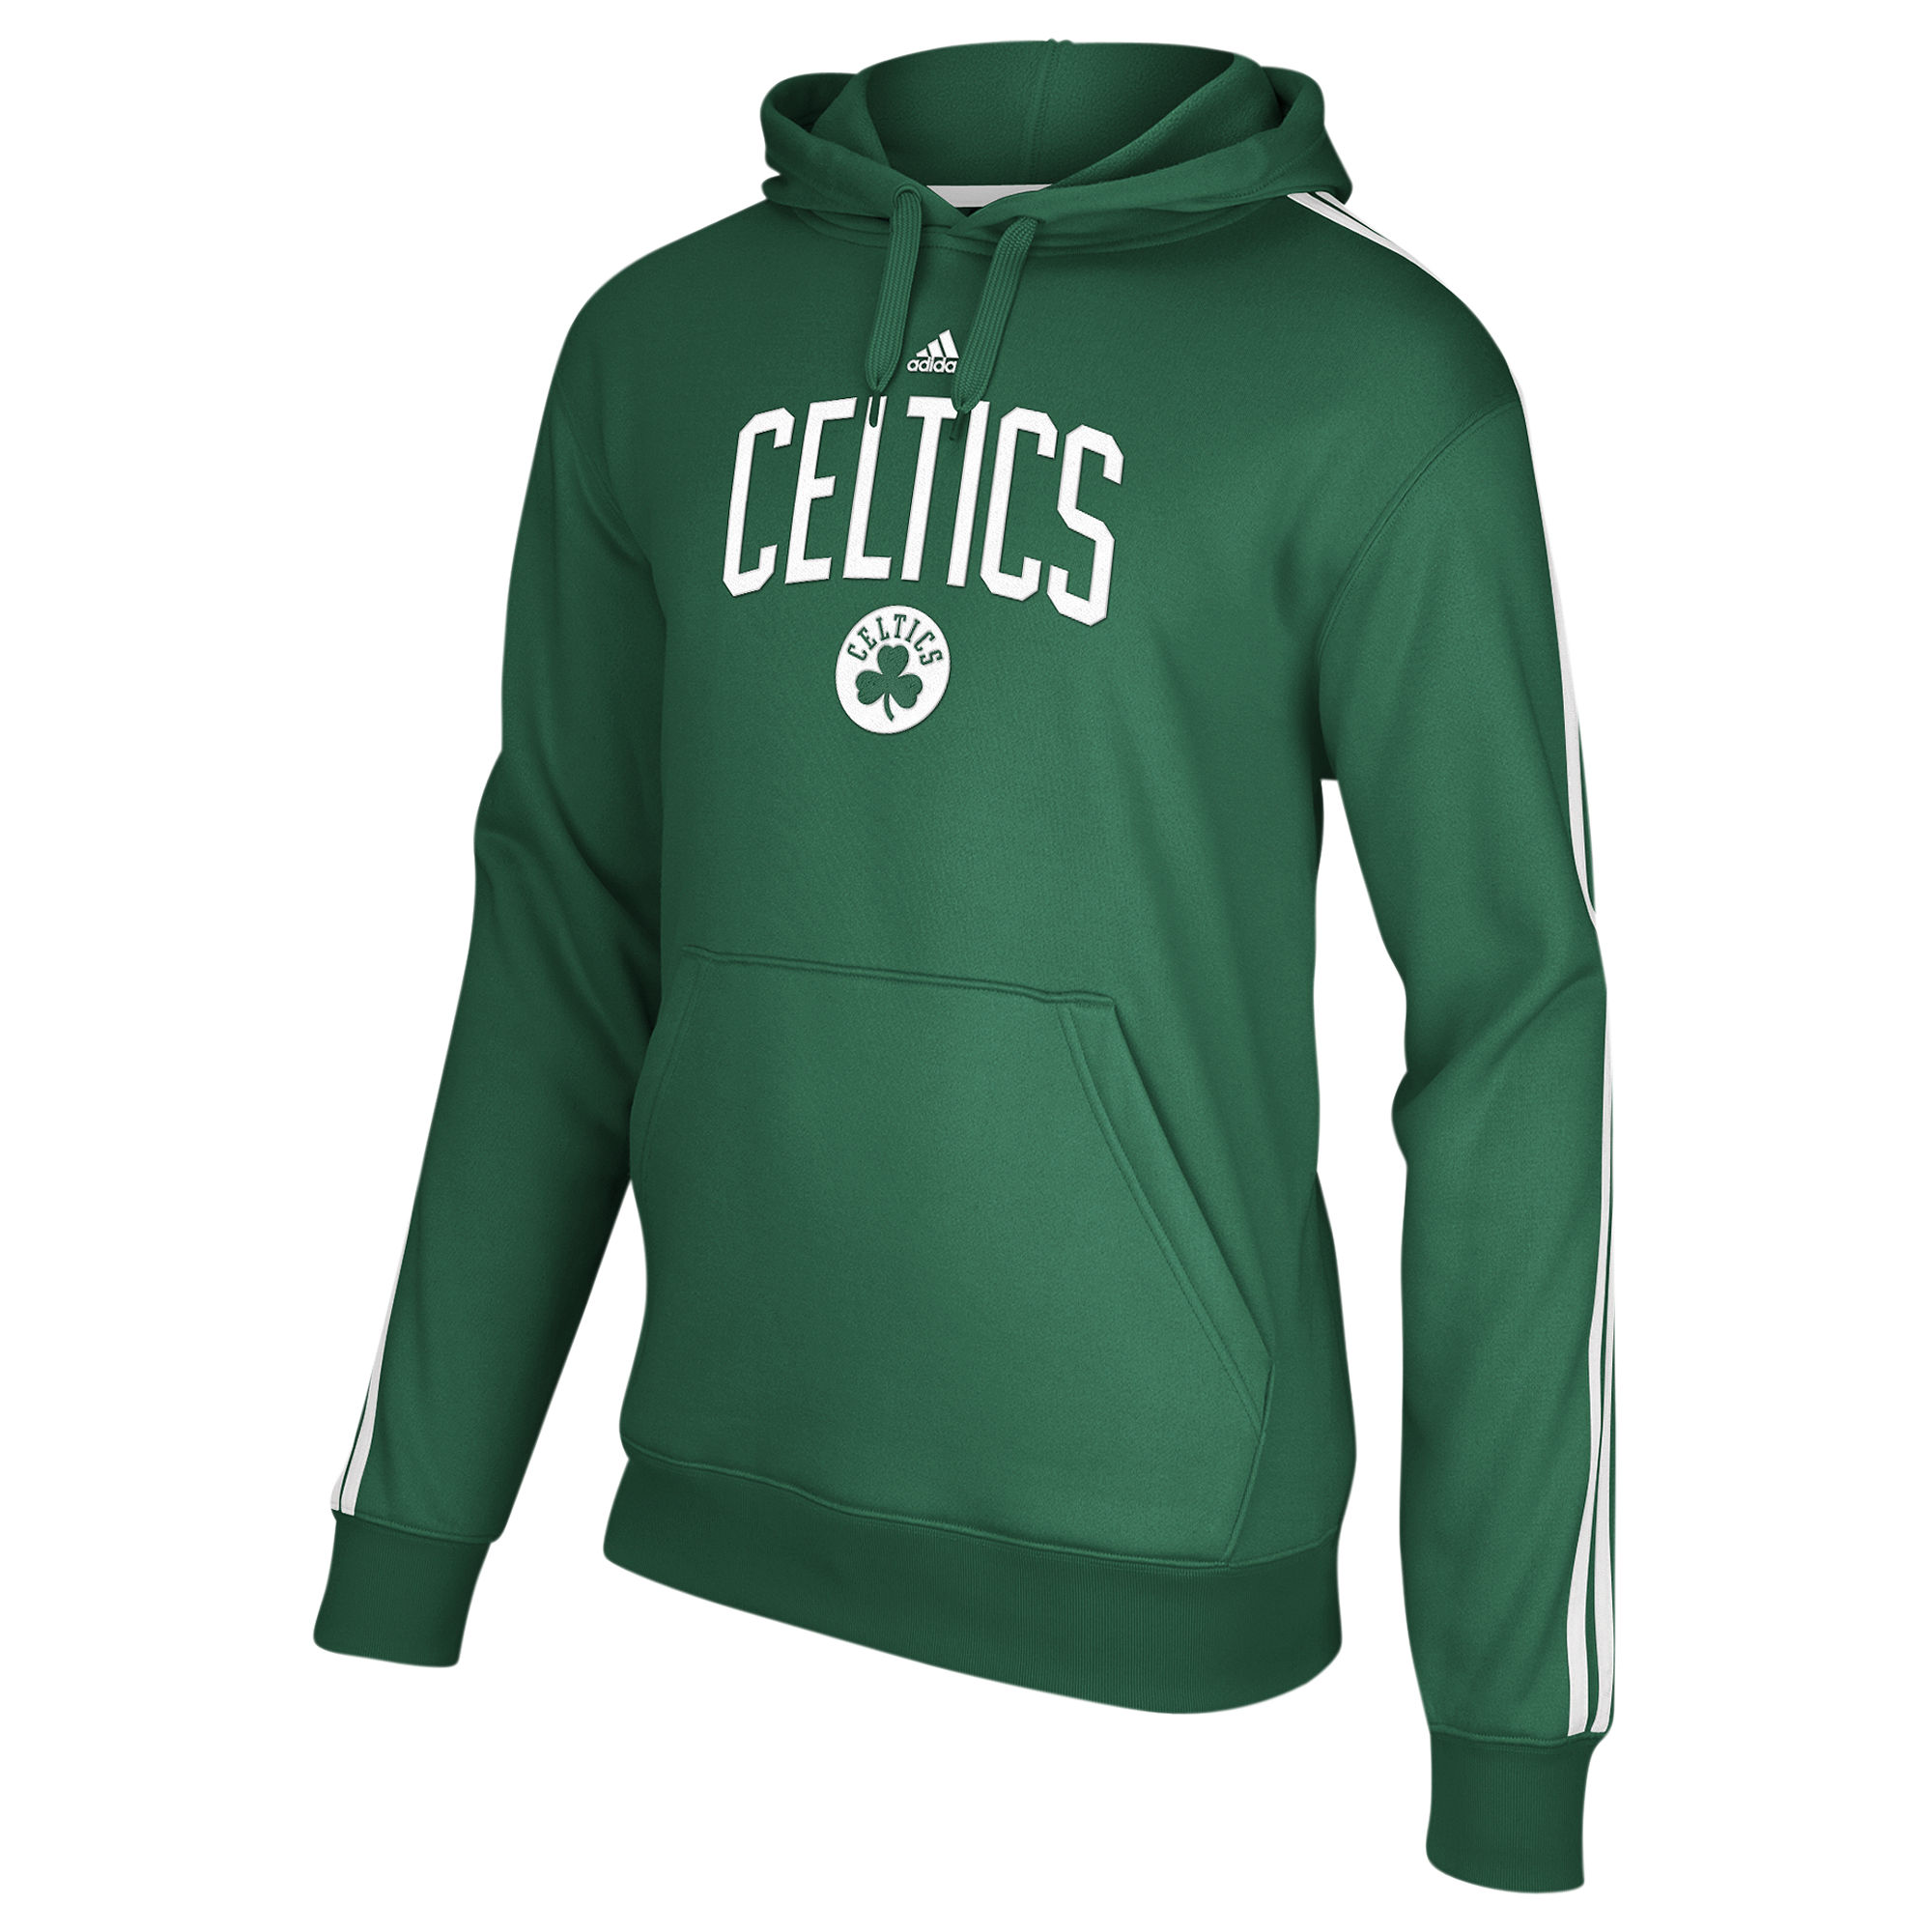 Adidas Celtics Hoodie Netherlands, SAVE 34% 